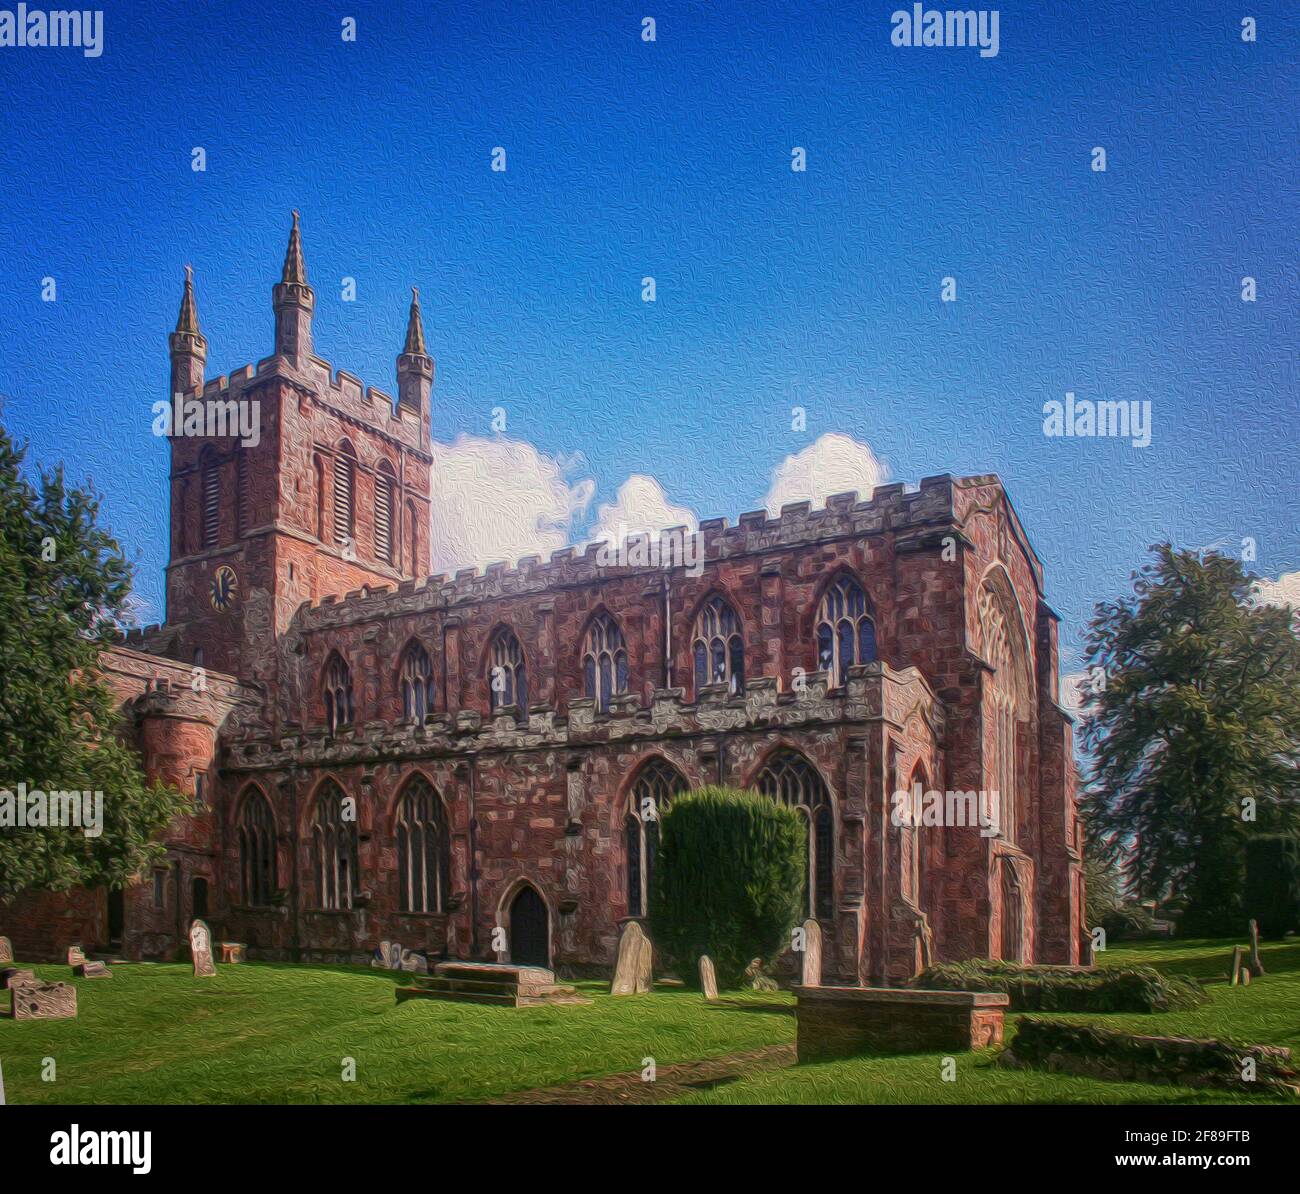 Crediton, Devon, UK- Pfarrkirche aus dem 15. Jahrhundert, Mauerwerk im normannischen gotischen Stil mit quadratischem Glockenturm. Maleffekt hinzugefügt Stockfoto